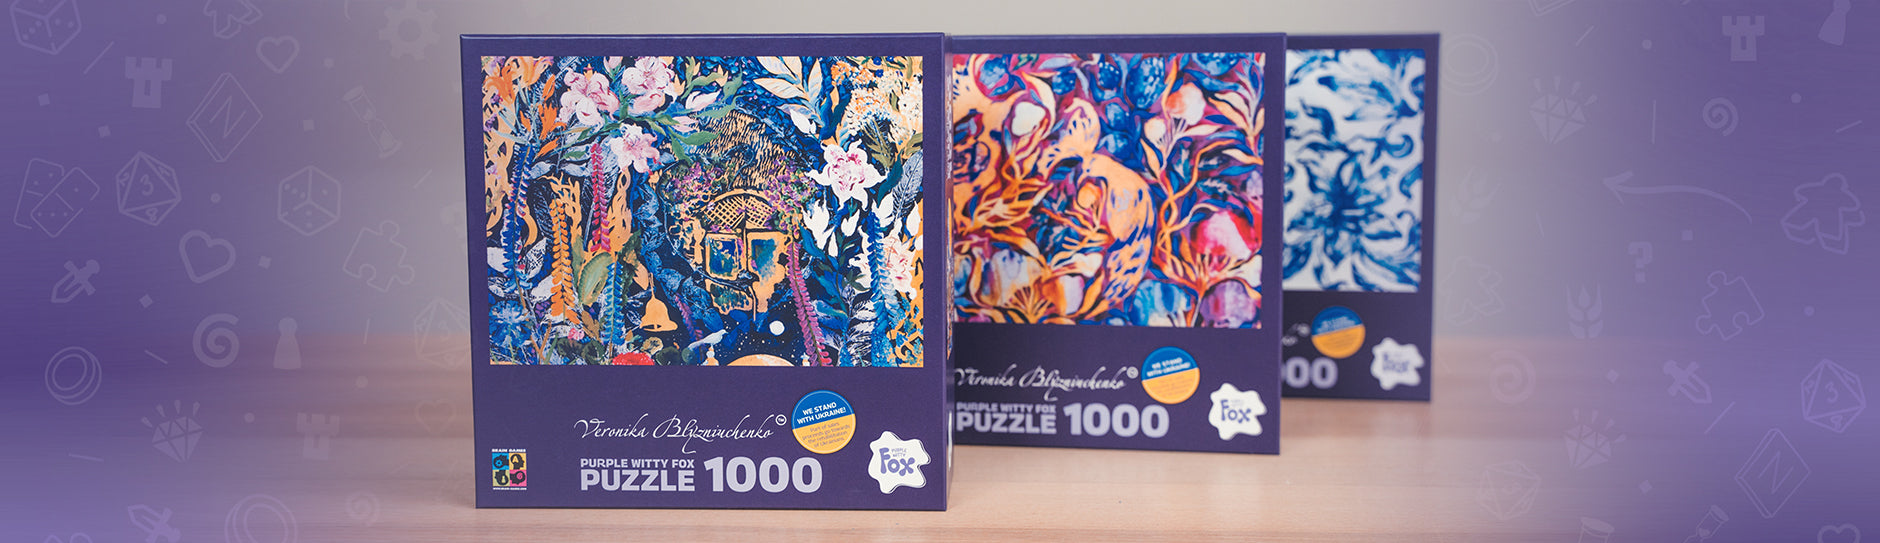 Purple Witty Fox Jigsaw Puzzles